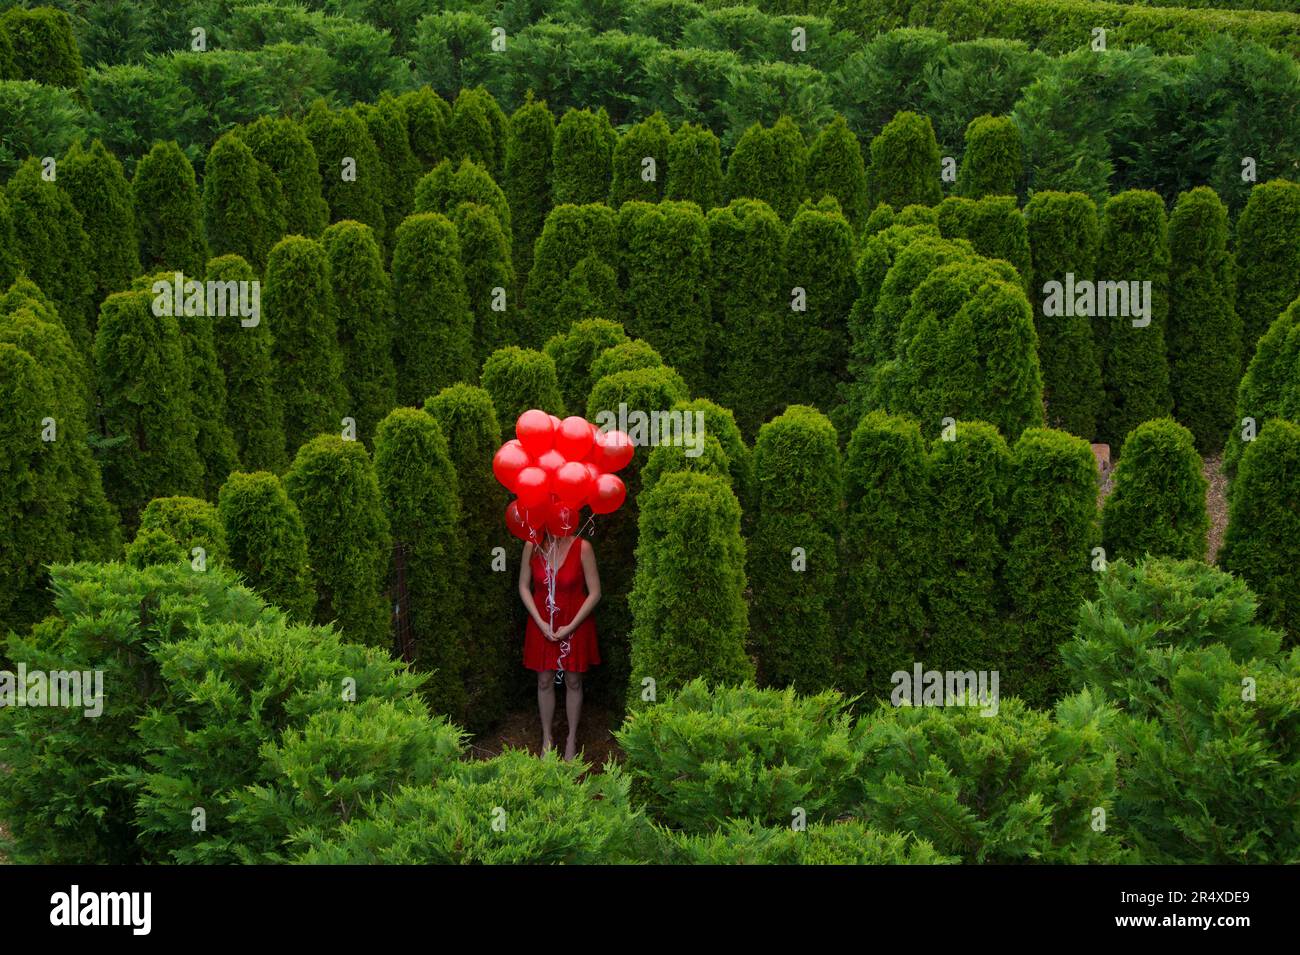 Une jeune femme se tient avec un groupe de ballons rouges qui obscurcissent son visage dans un jardin; Luray, Virginie, États-Unis d'Amérique Banque D'Images